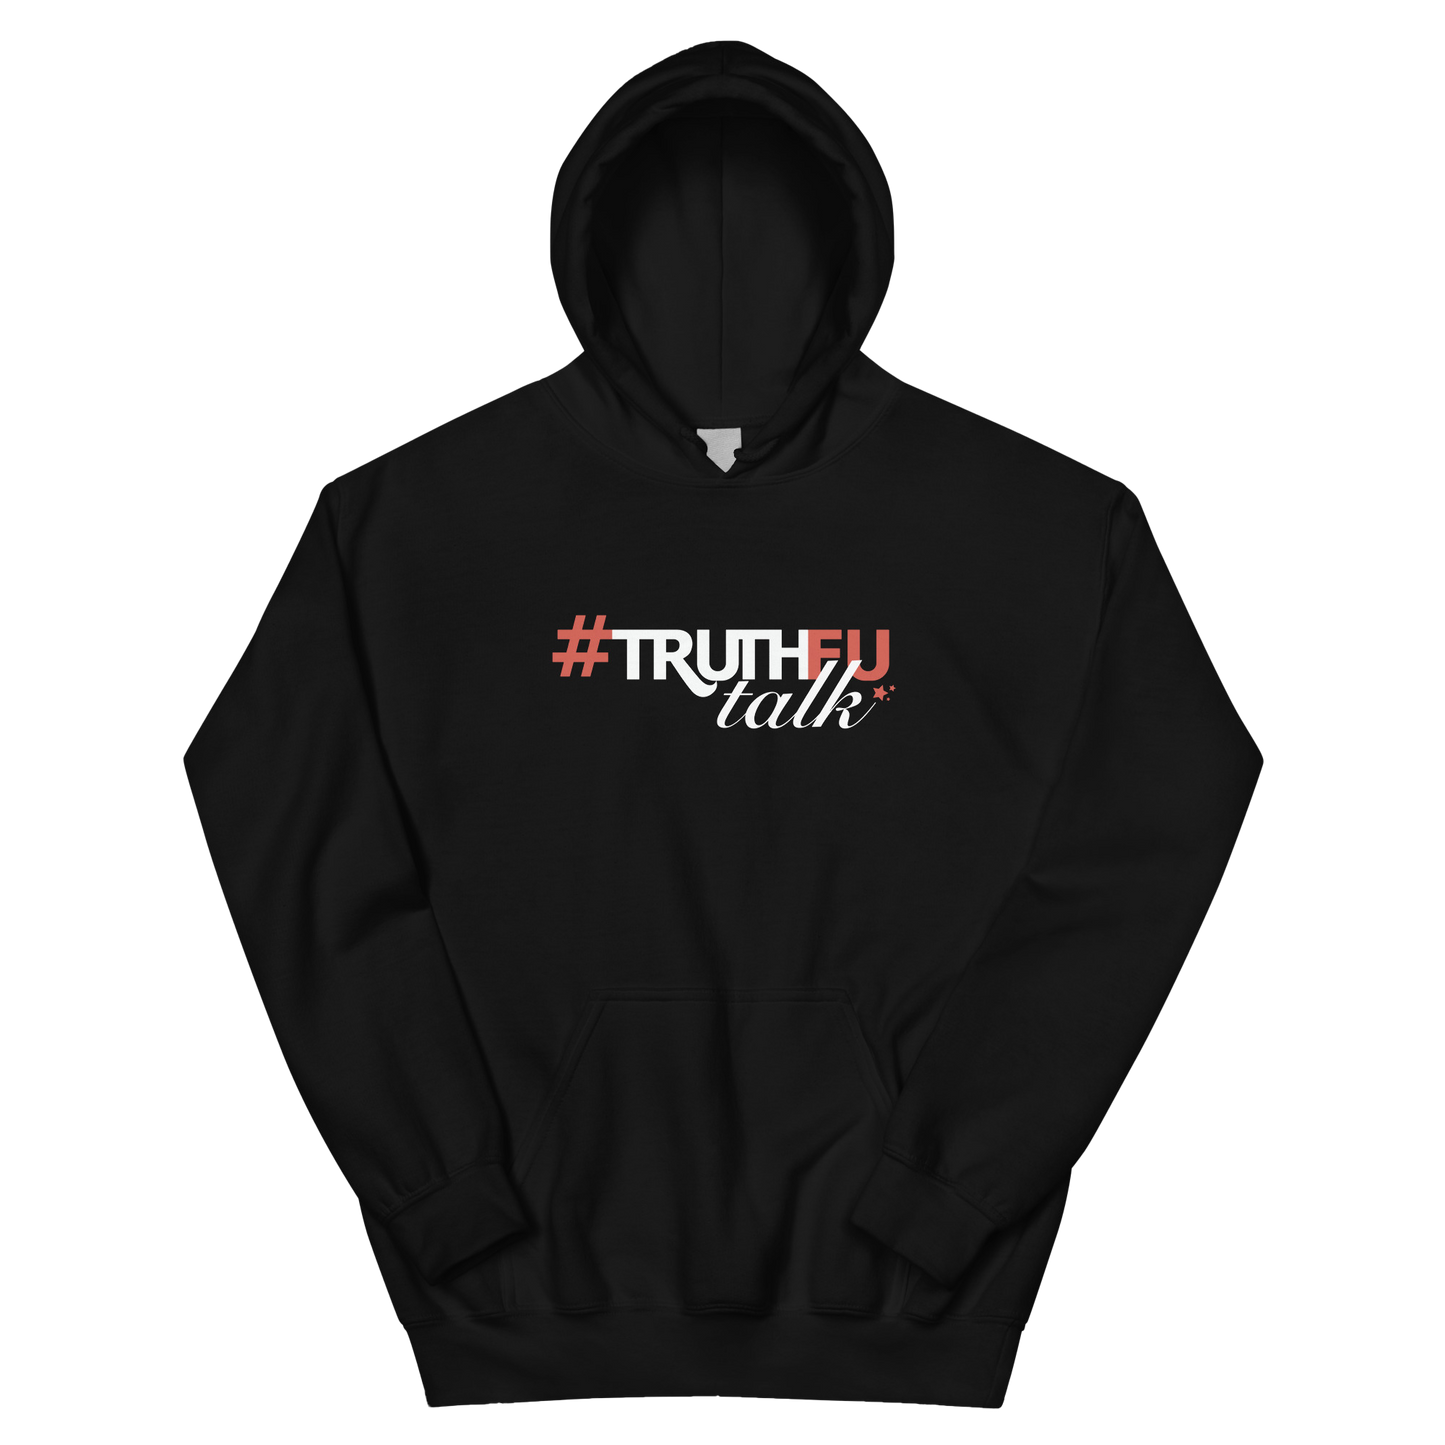 #TruthFuTalk Black Hoodie